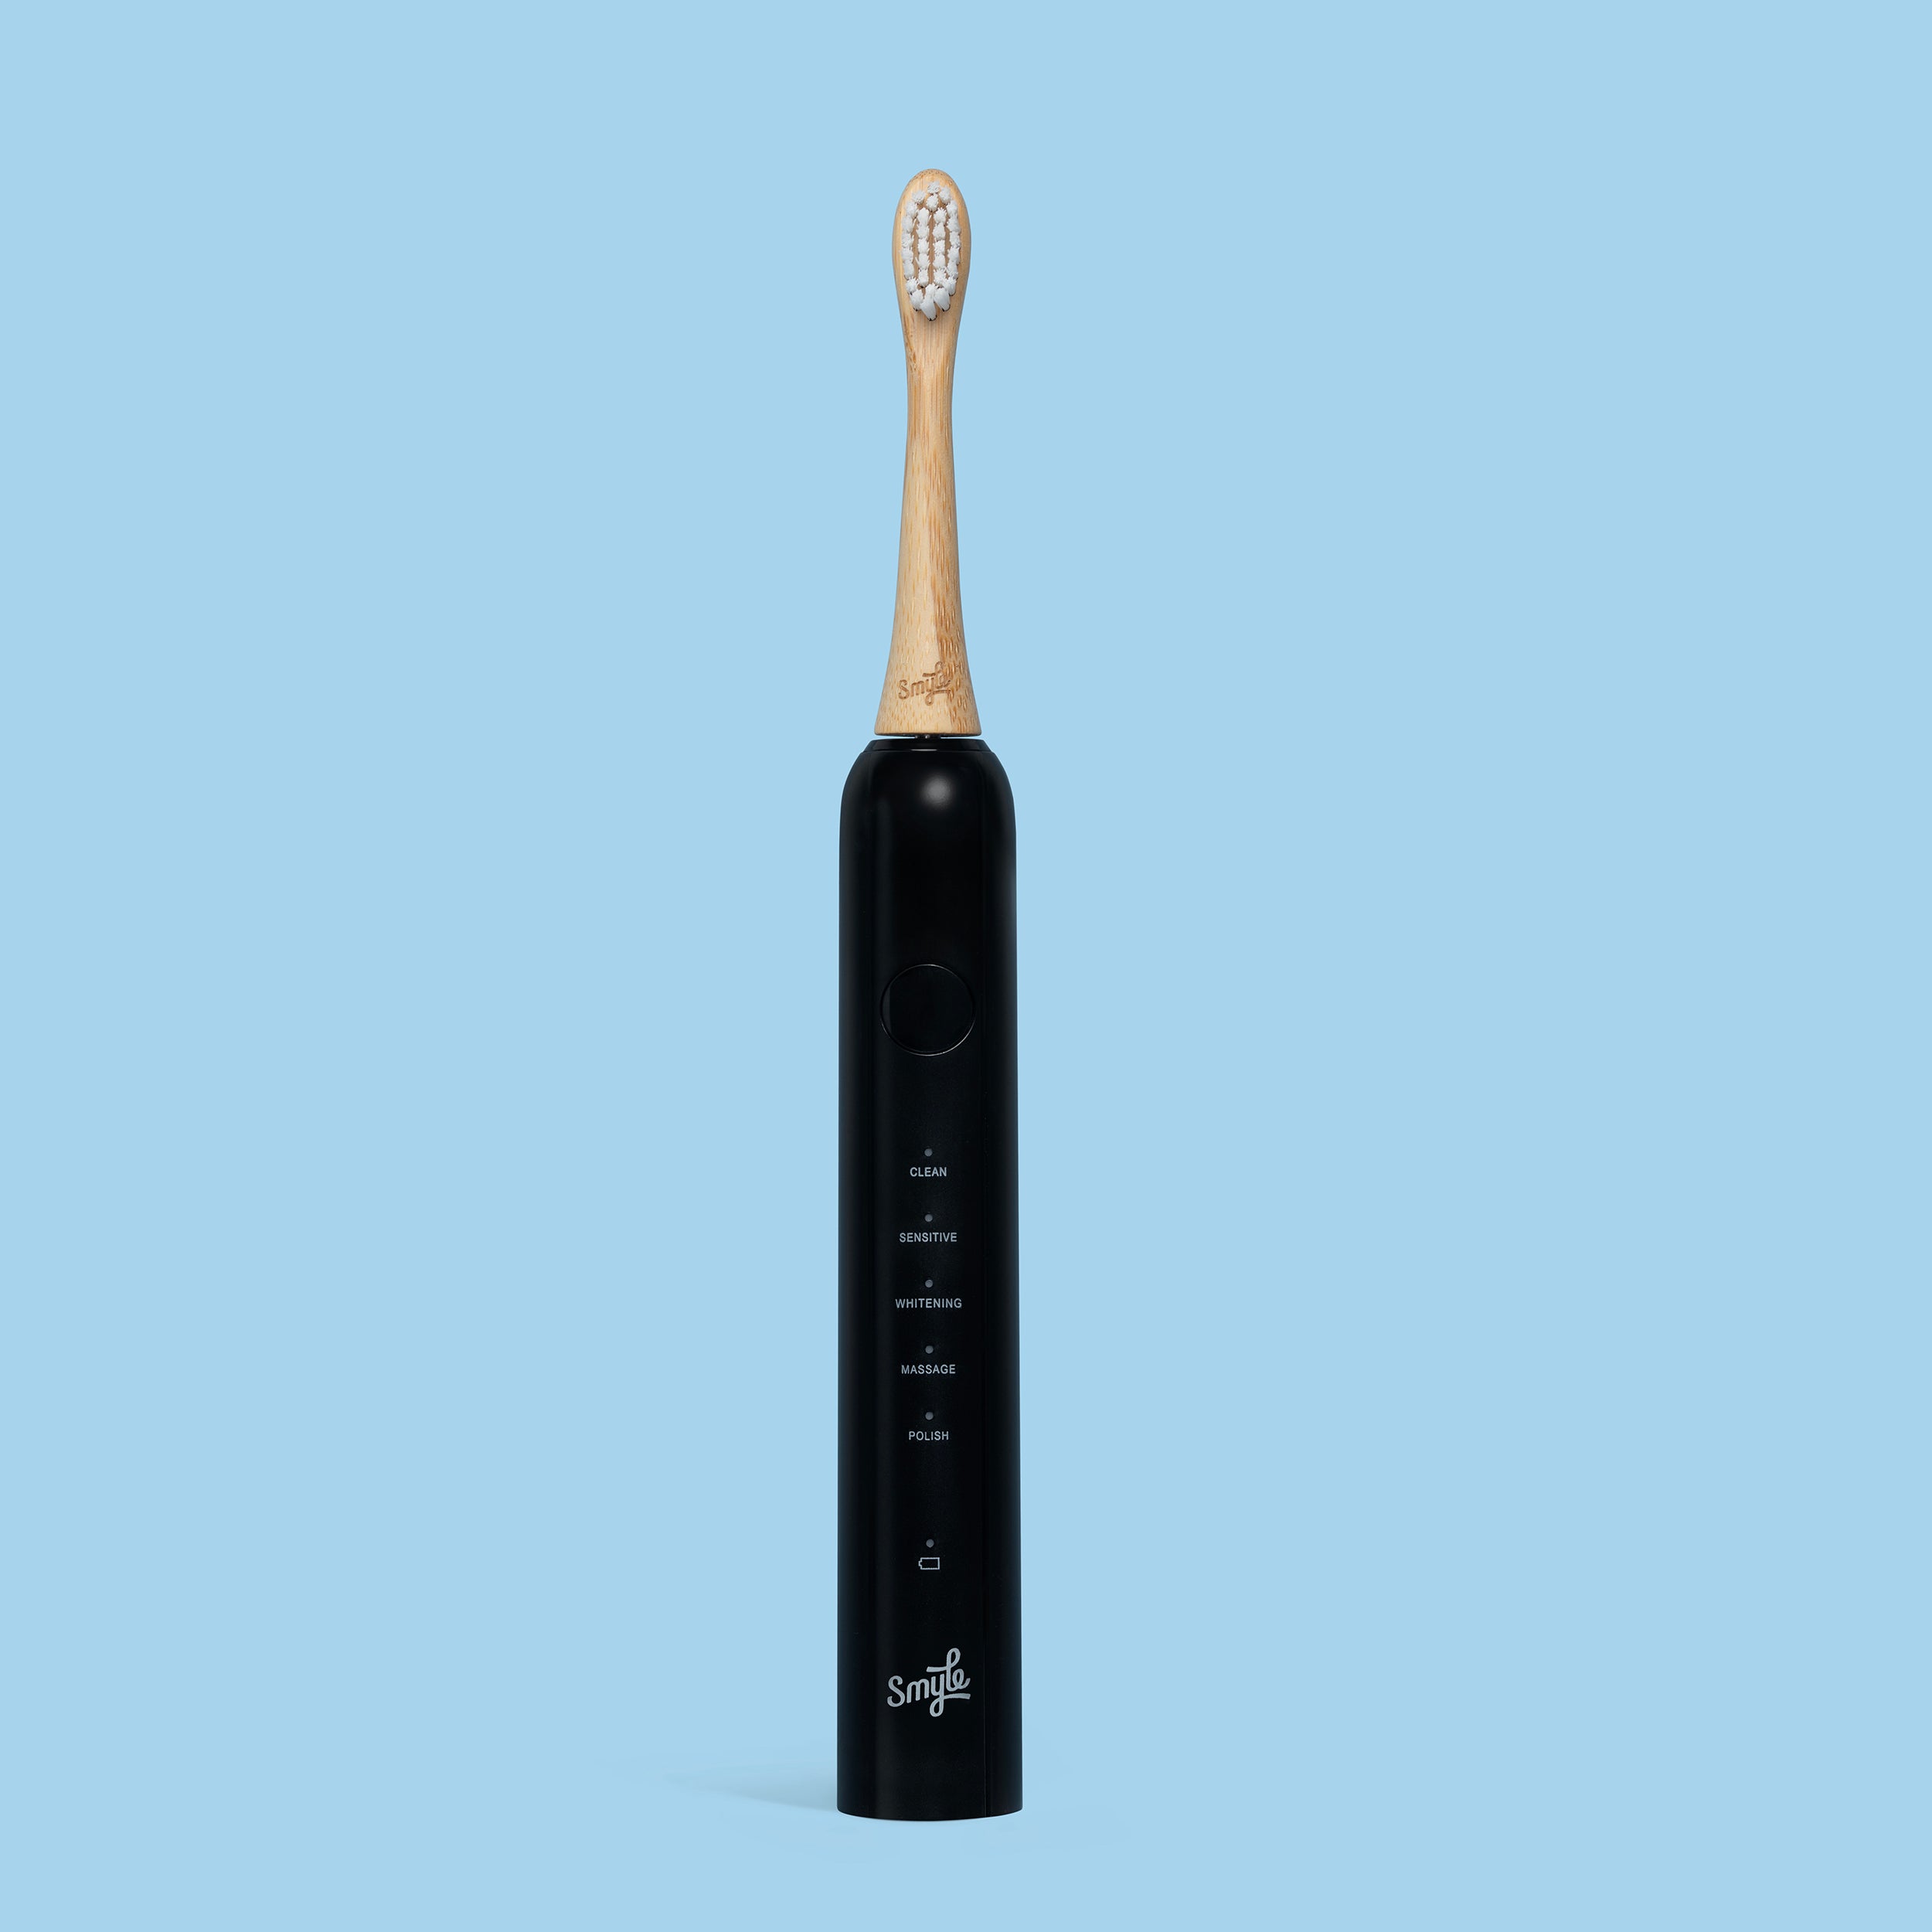 Cepillo de dientes eléctrico – Paquete